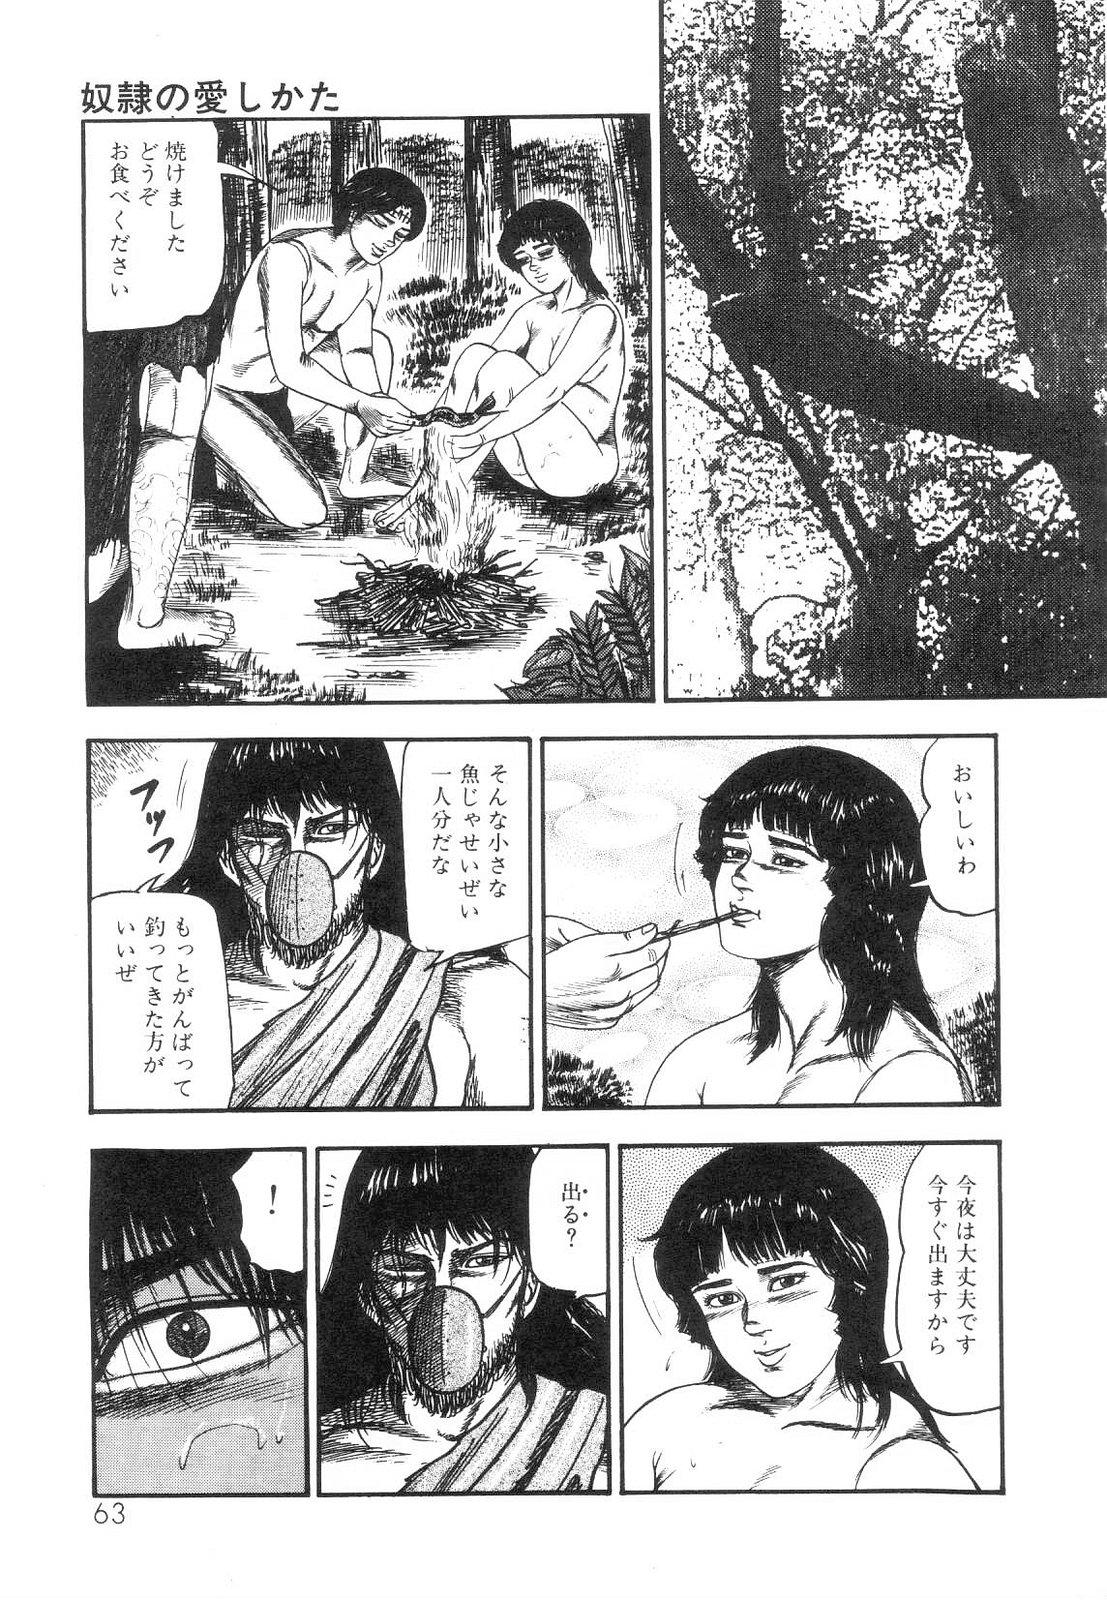 Shiro no Mokushiroku Vol. 5 - Ninshoujo Erika no Shou 64